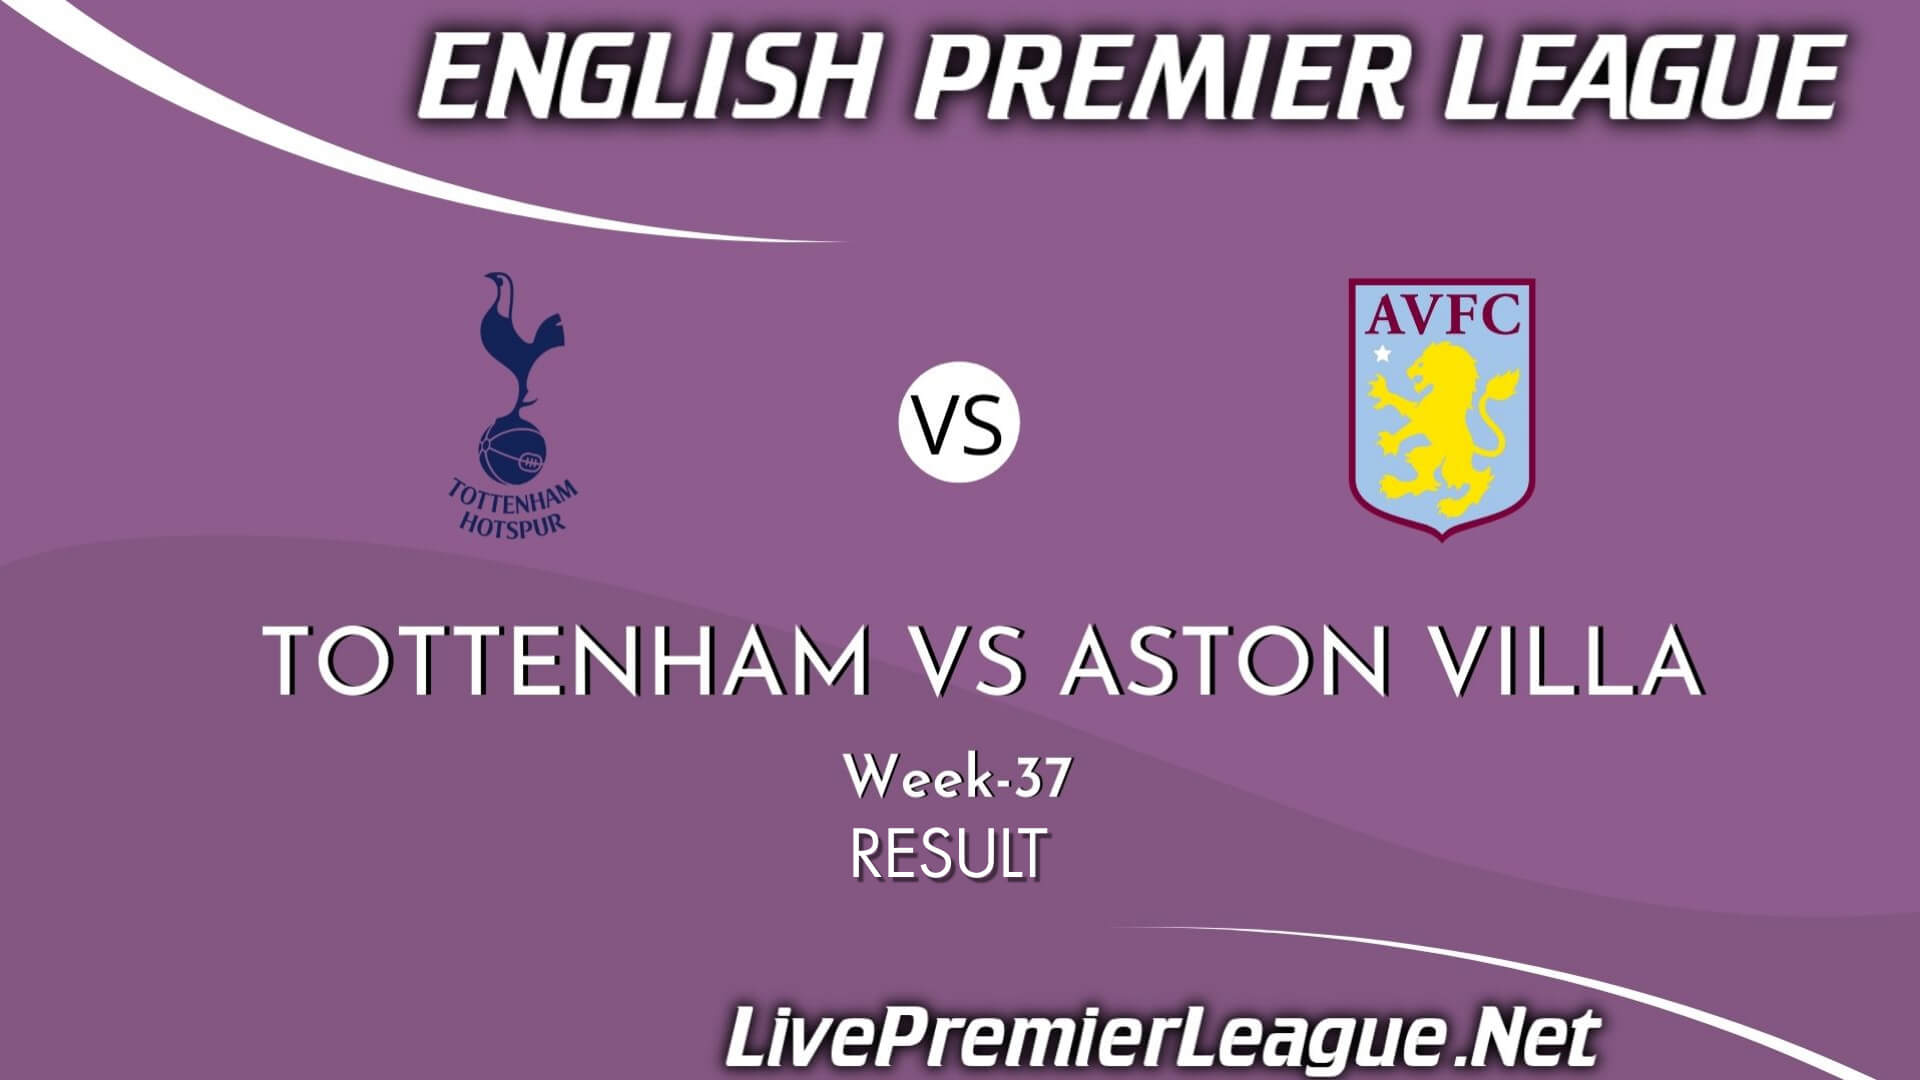 Tottenham Vs Aston Villa Result 2021 | EPL Week 37